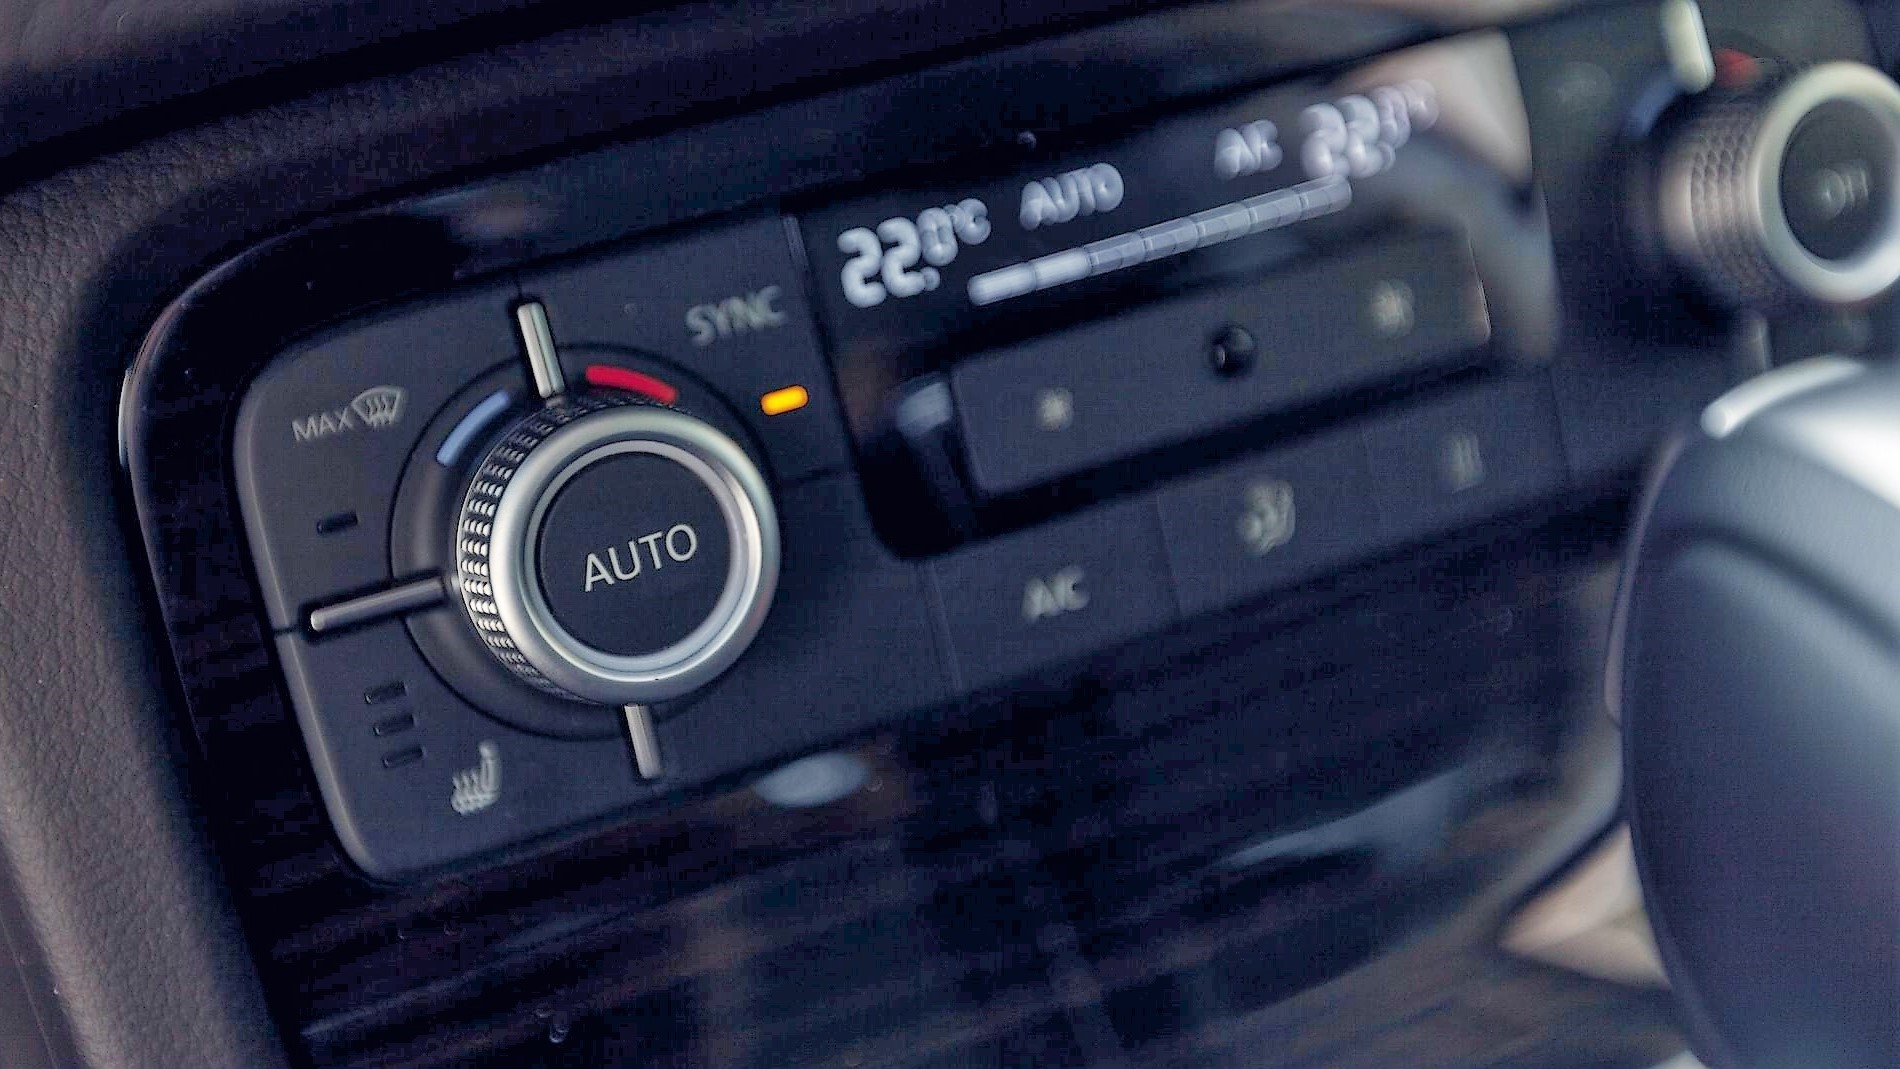 ▷Importancia de cambiar el filtro del aire del coche regularmente